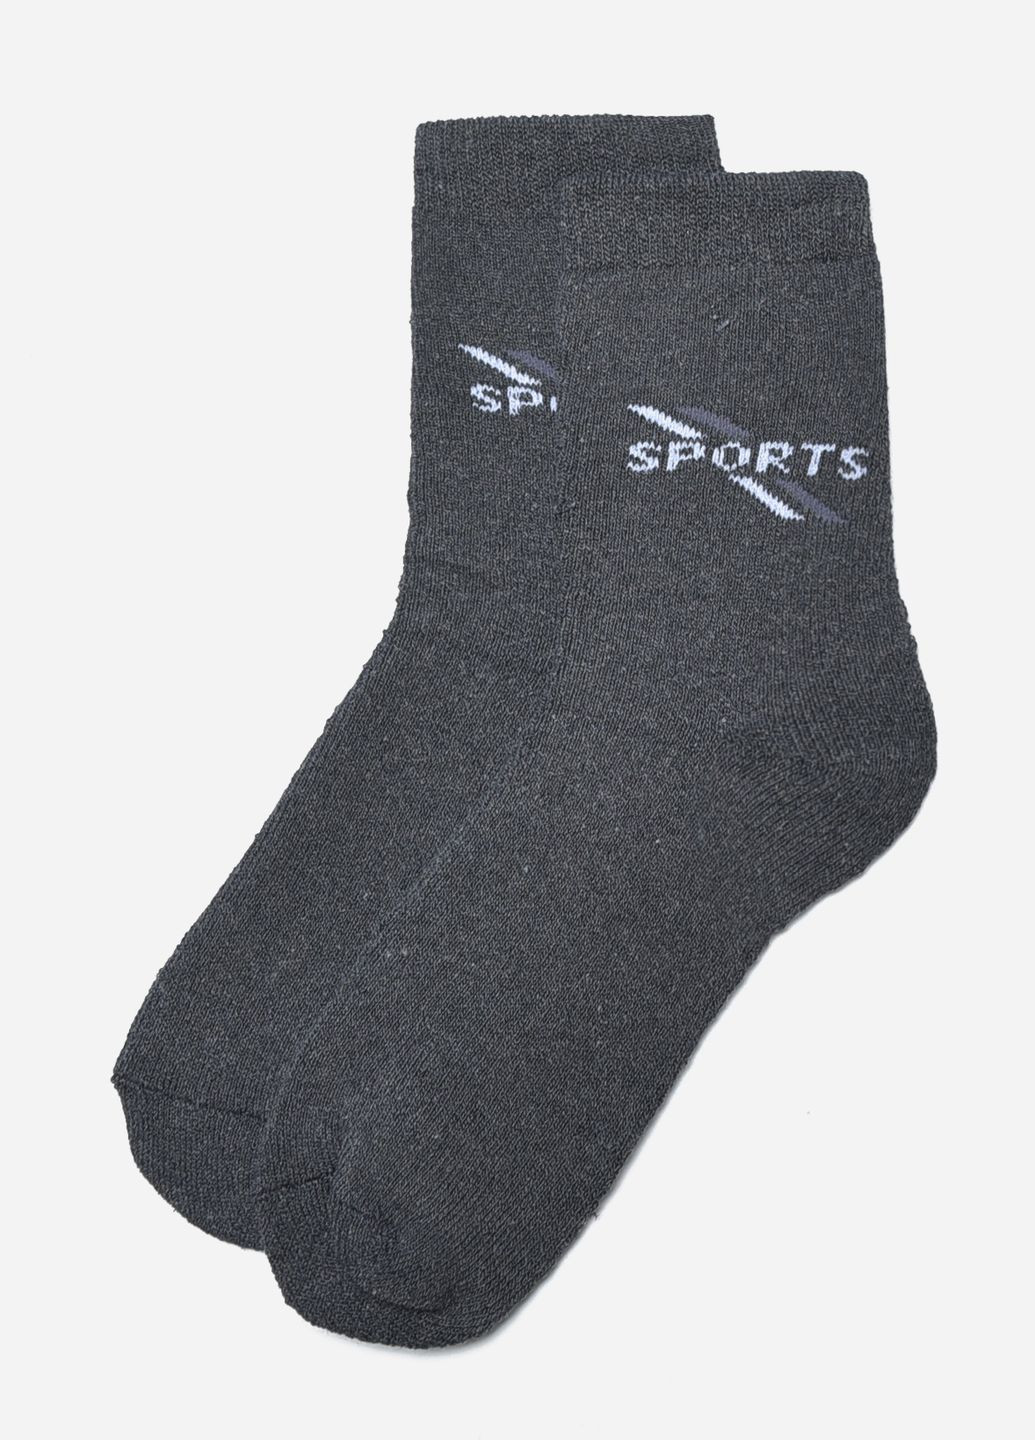 Шкарпетки чоловічі махрові темно-сірого кольору розмір 40-45 Let's Shop (267167093)